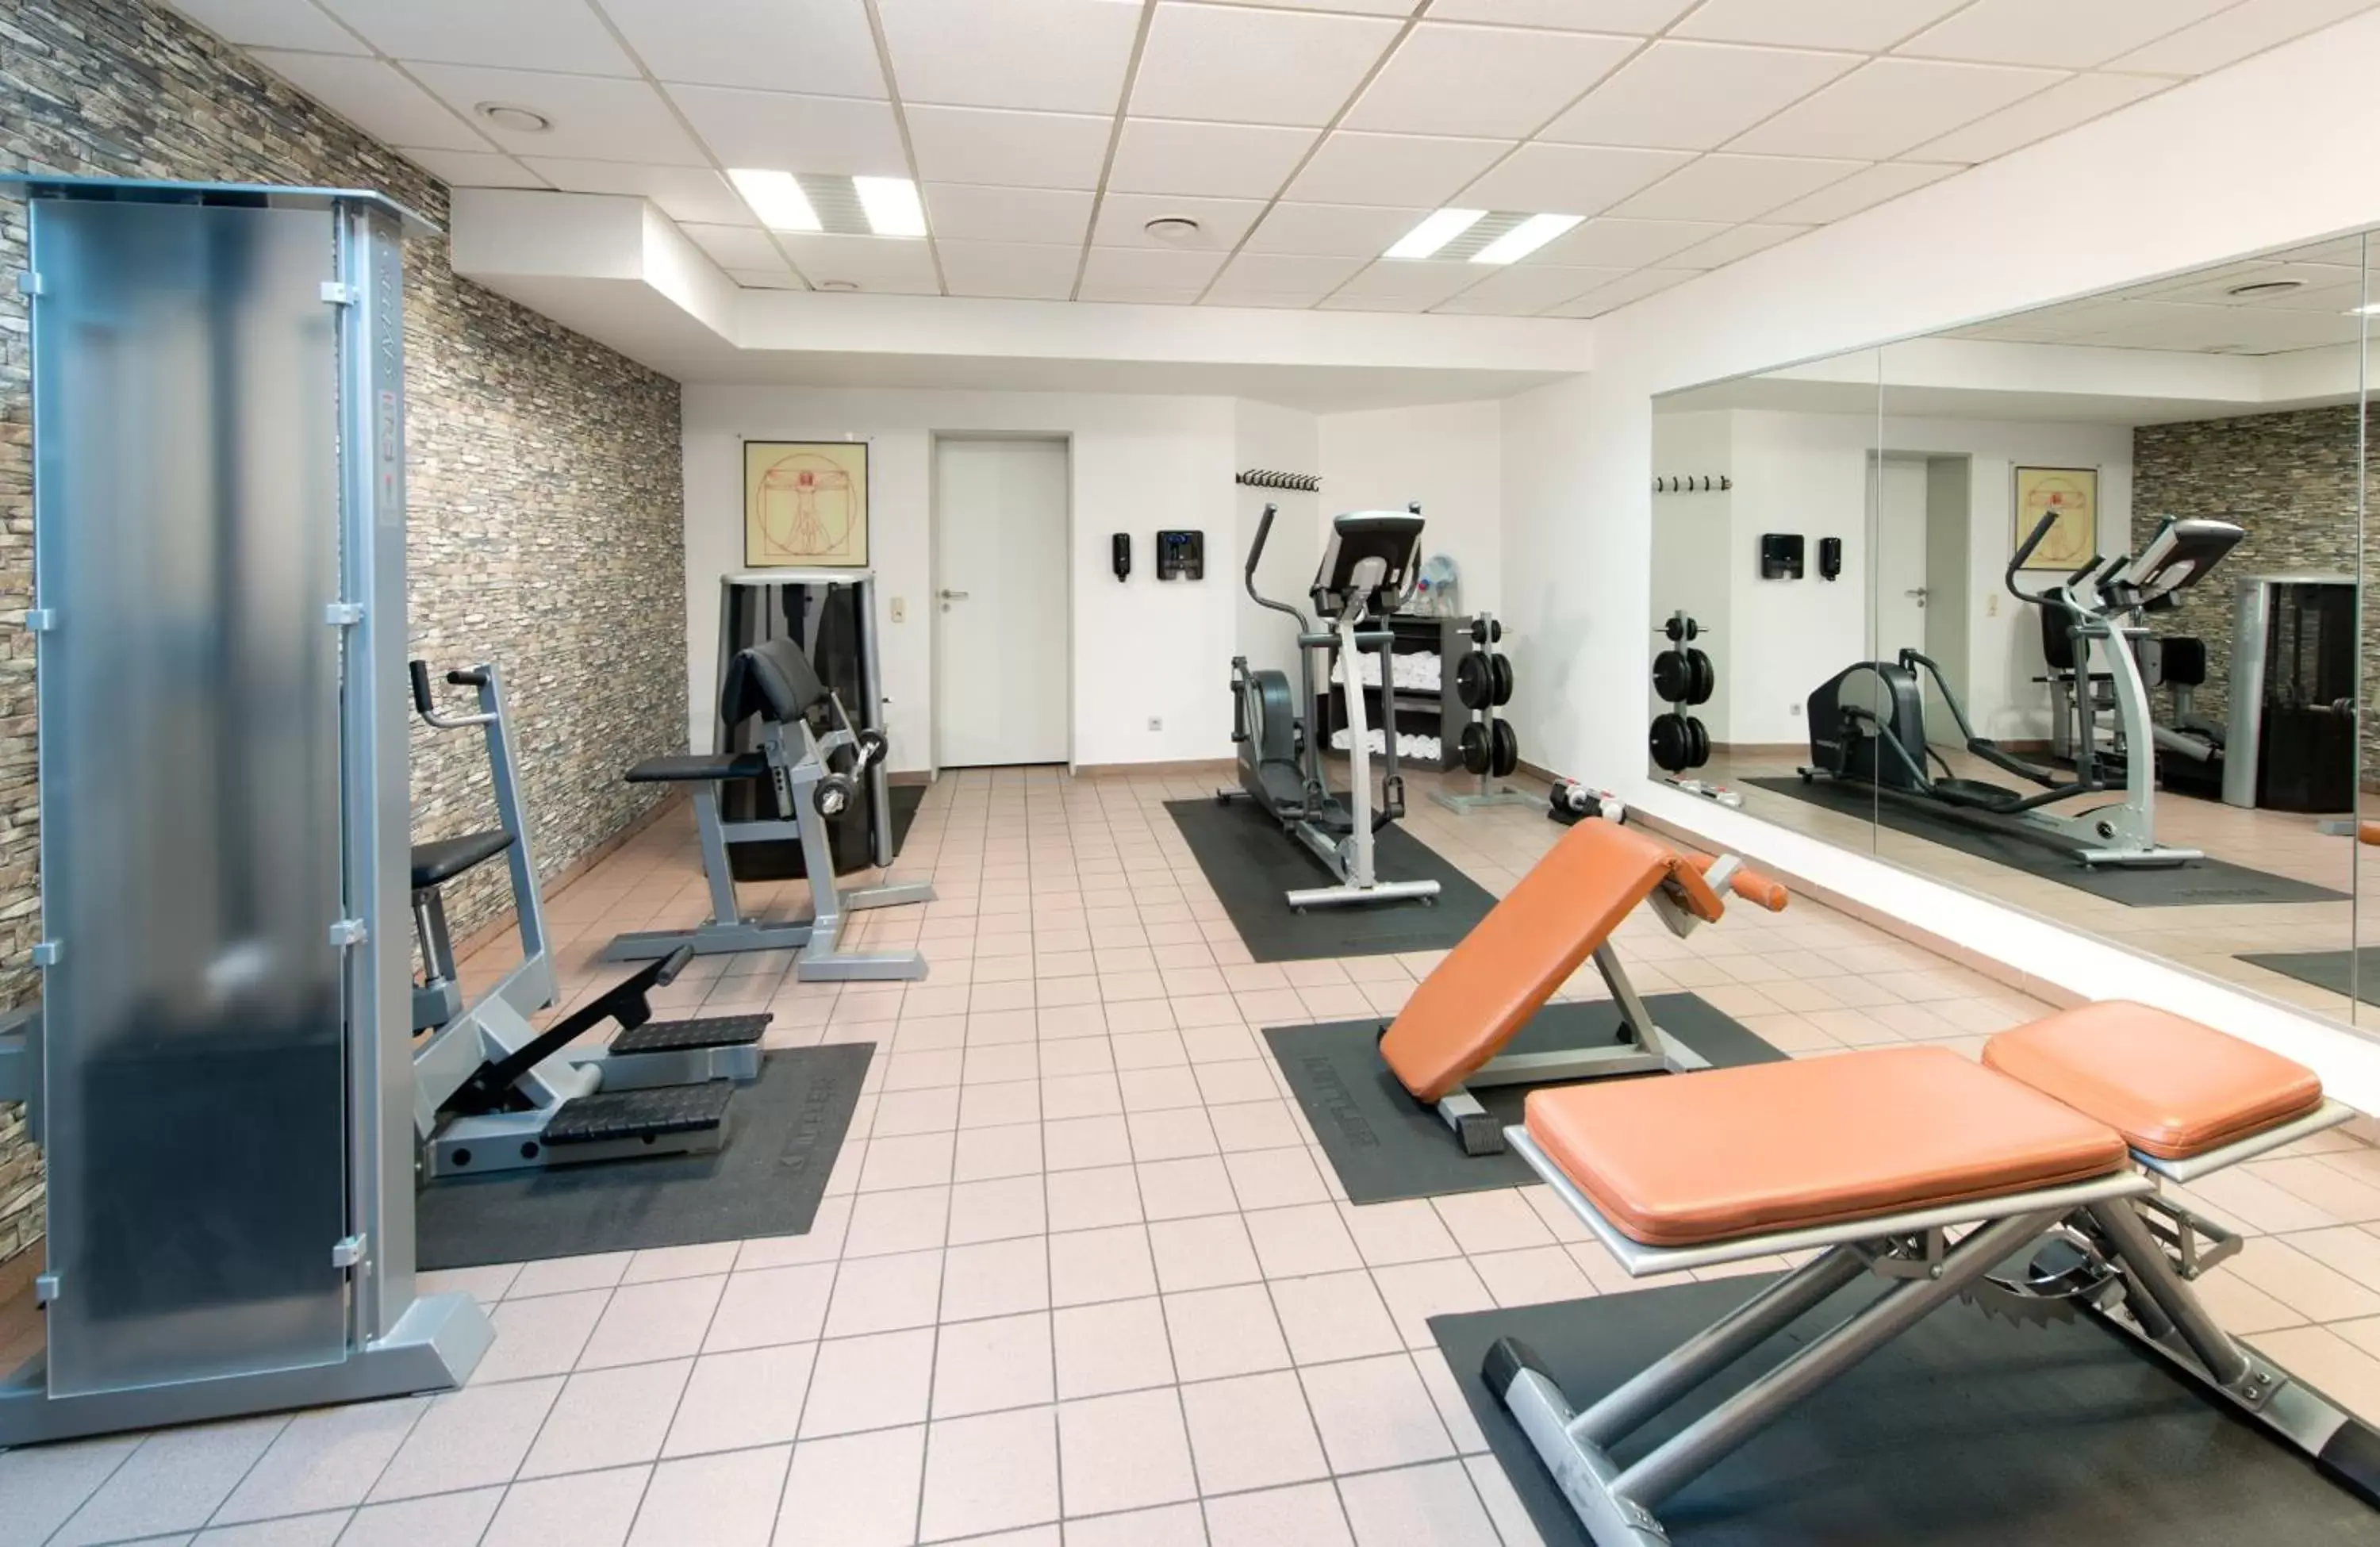 Fitness centre/facilities, Fitness Center/Facilities in Leonardo Hotel Köln